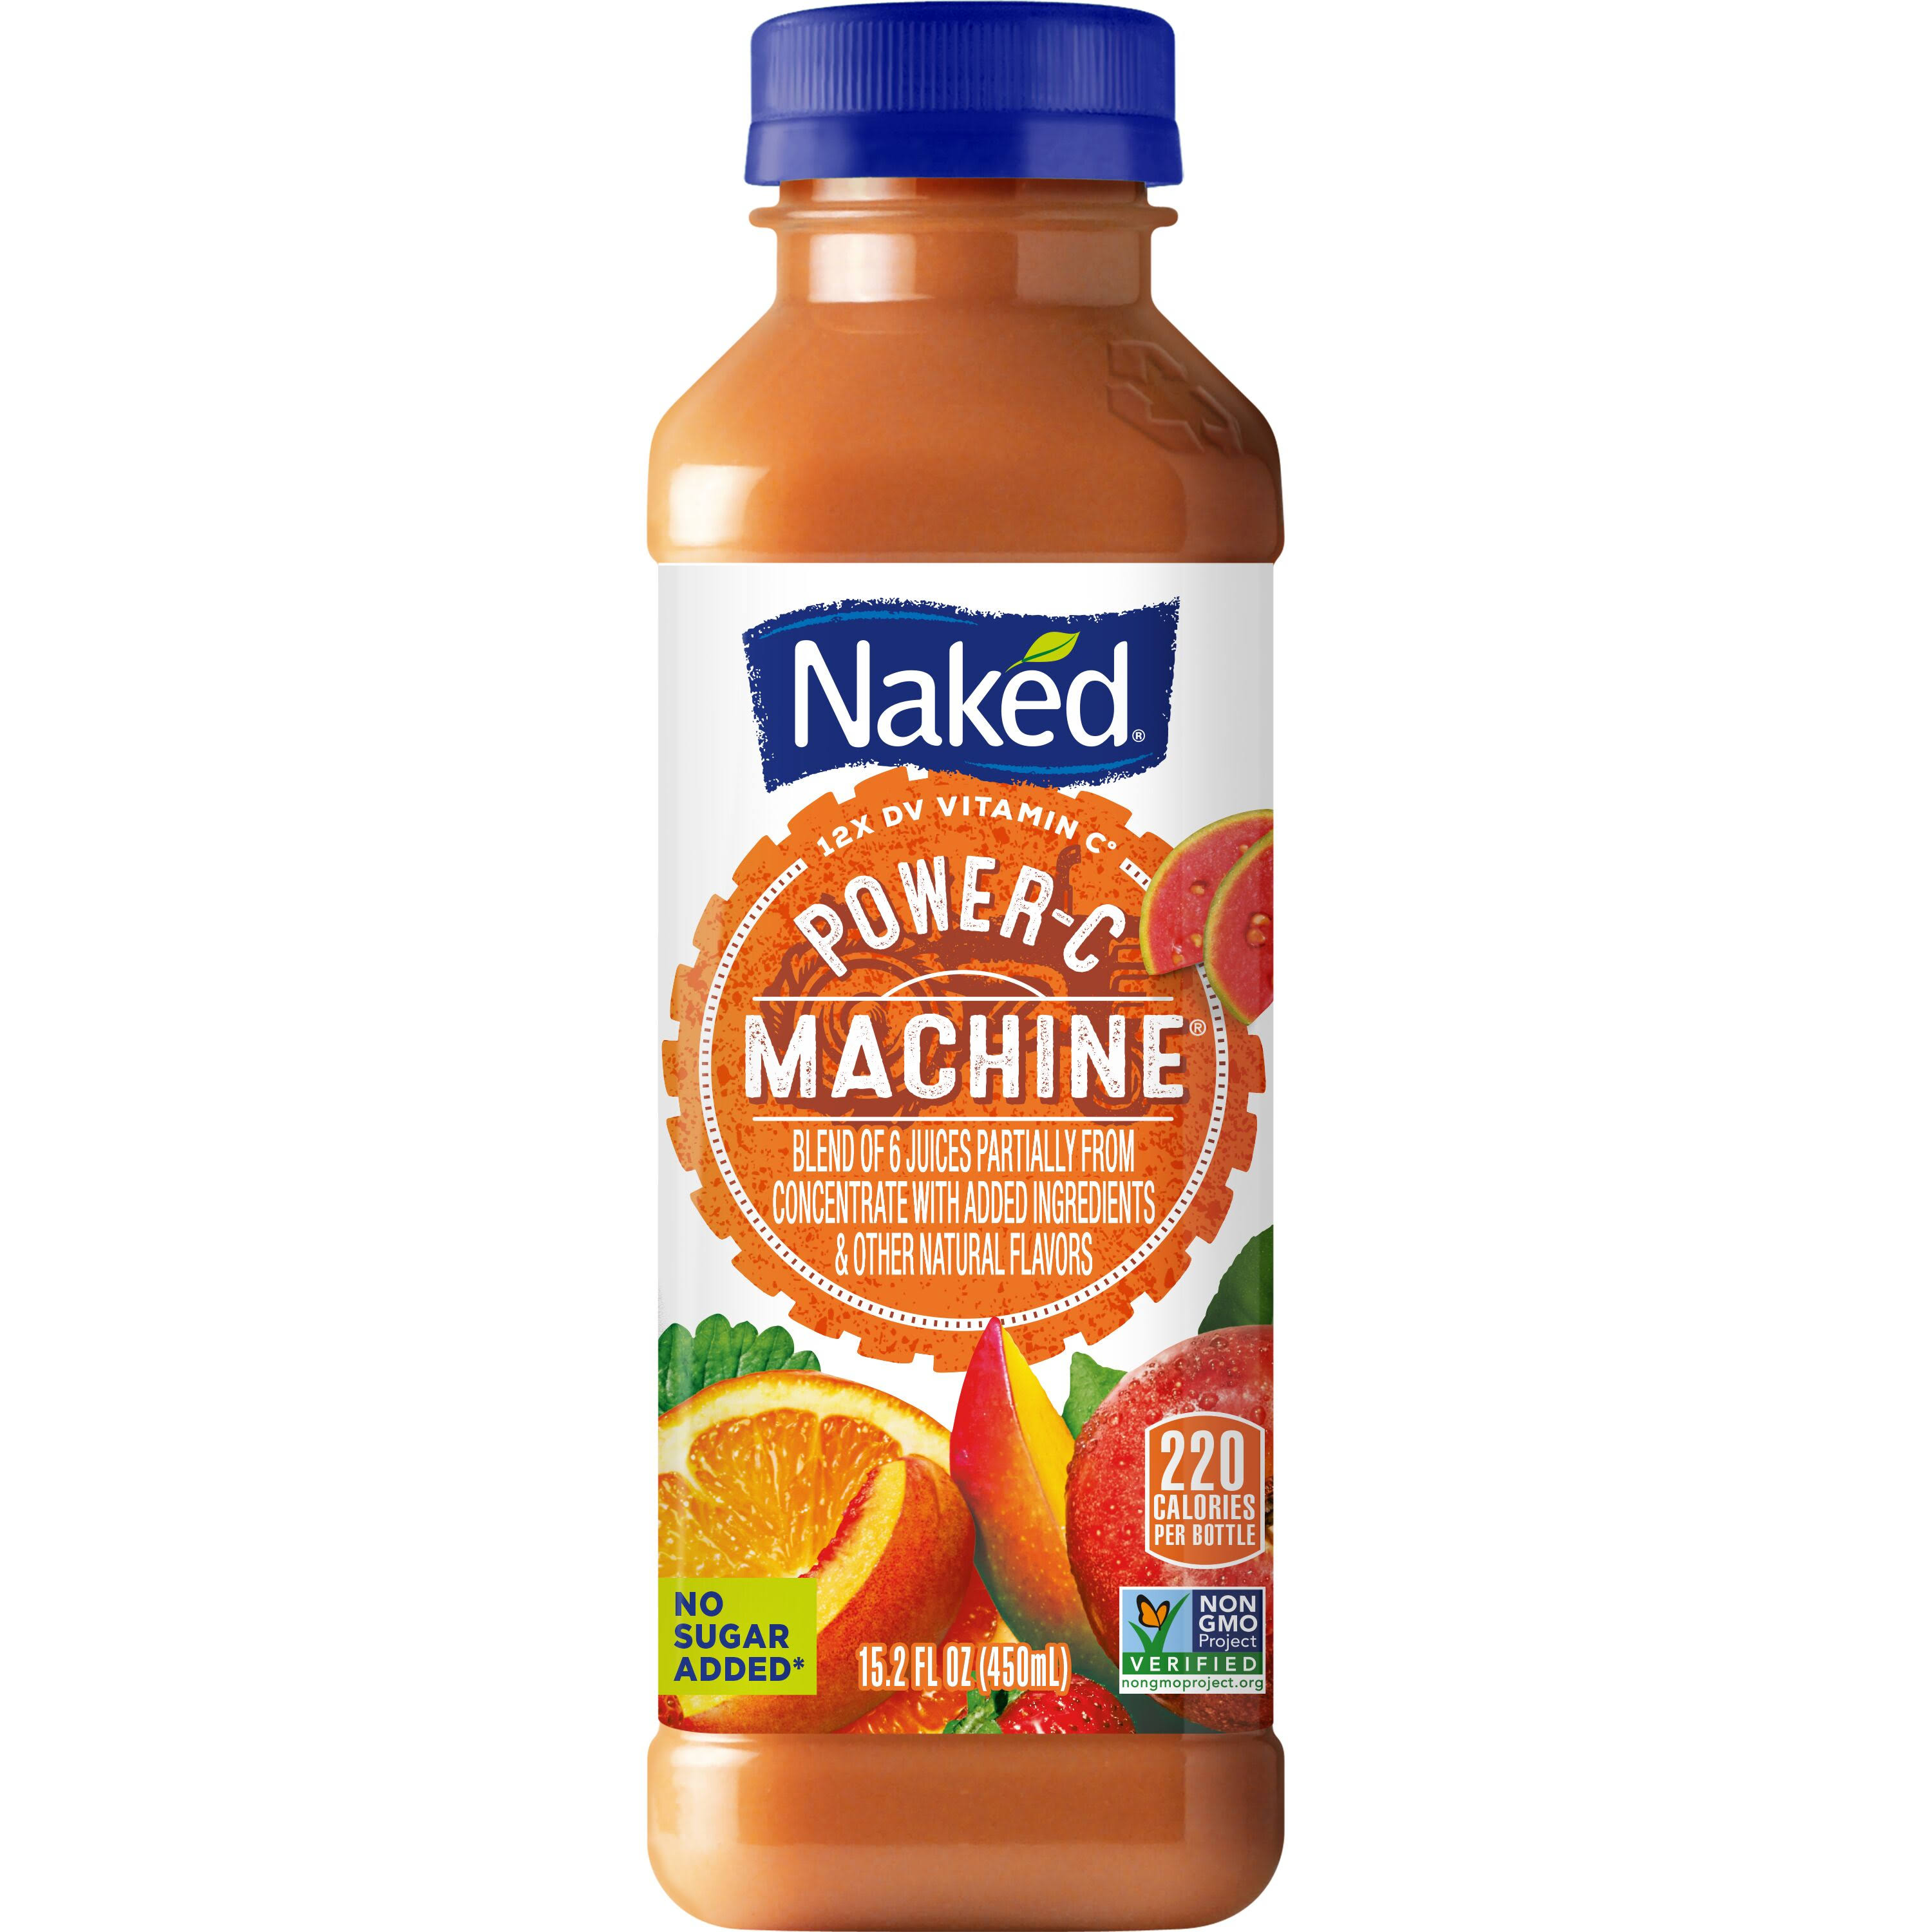 Naked Juice Power C Machine 100 Percent Juice Smoothie - 15.2oz